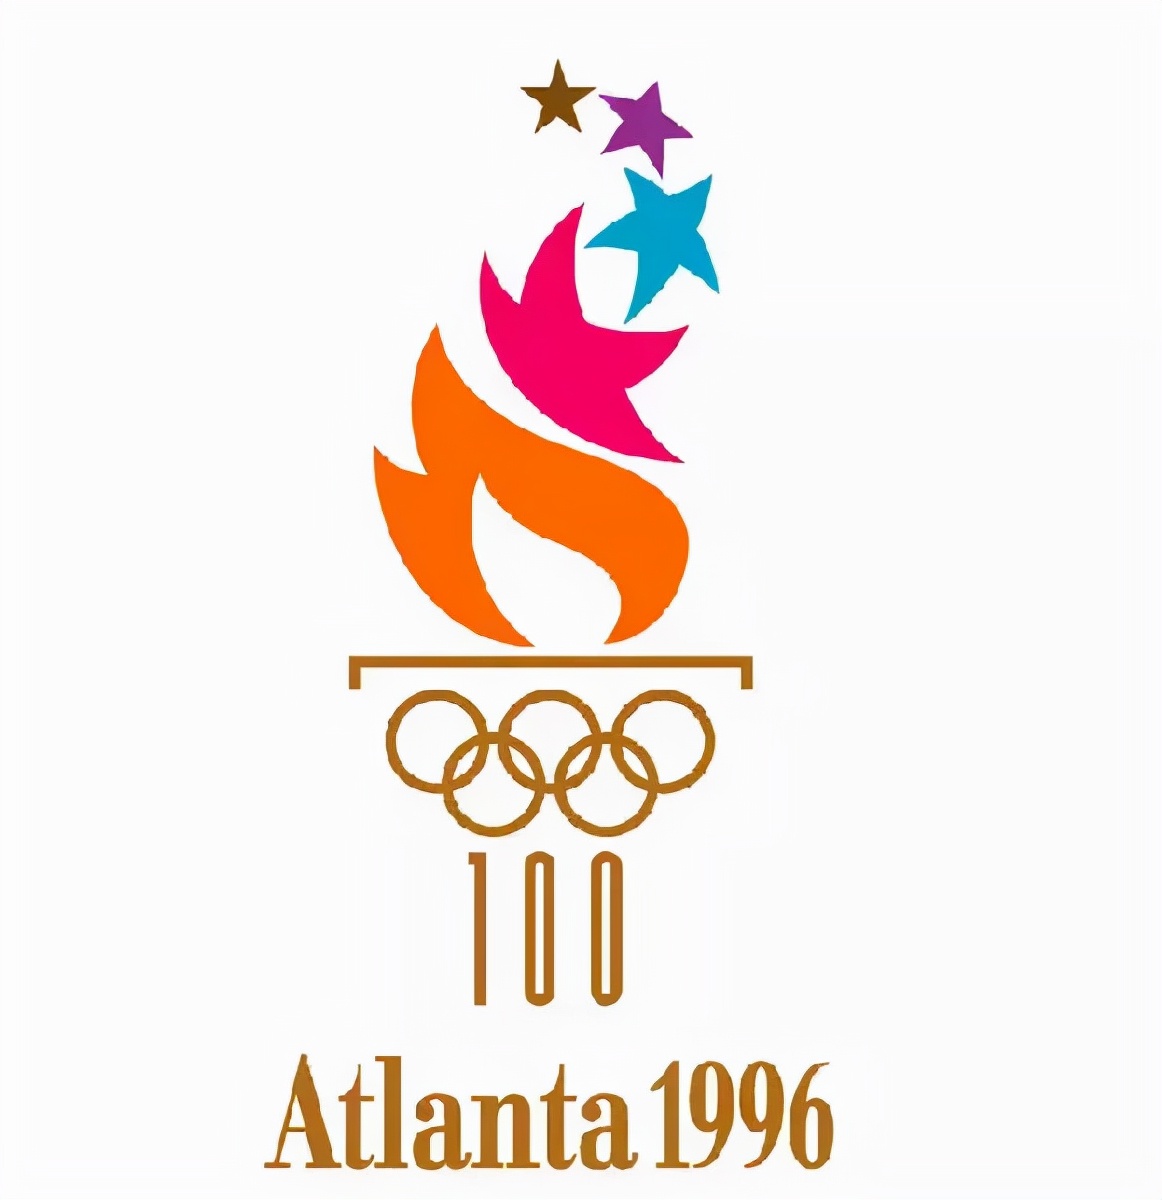 奥运会的会徽有哪些图案(历届奥运会会徽)